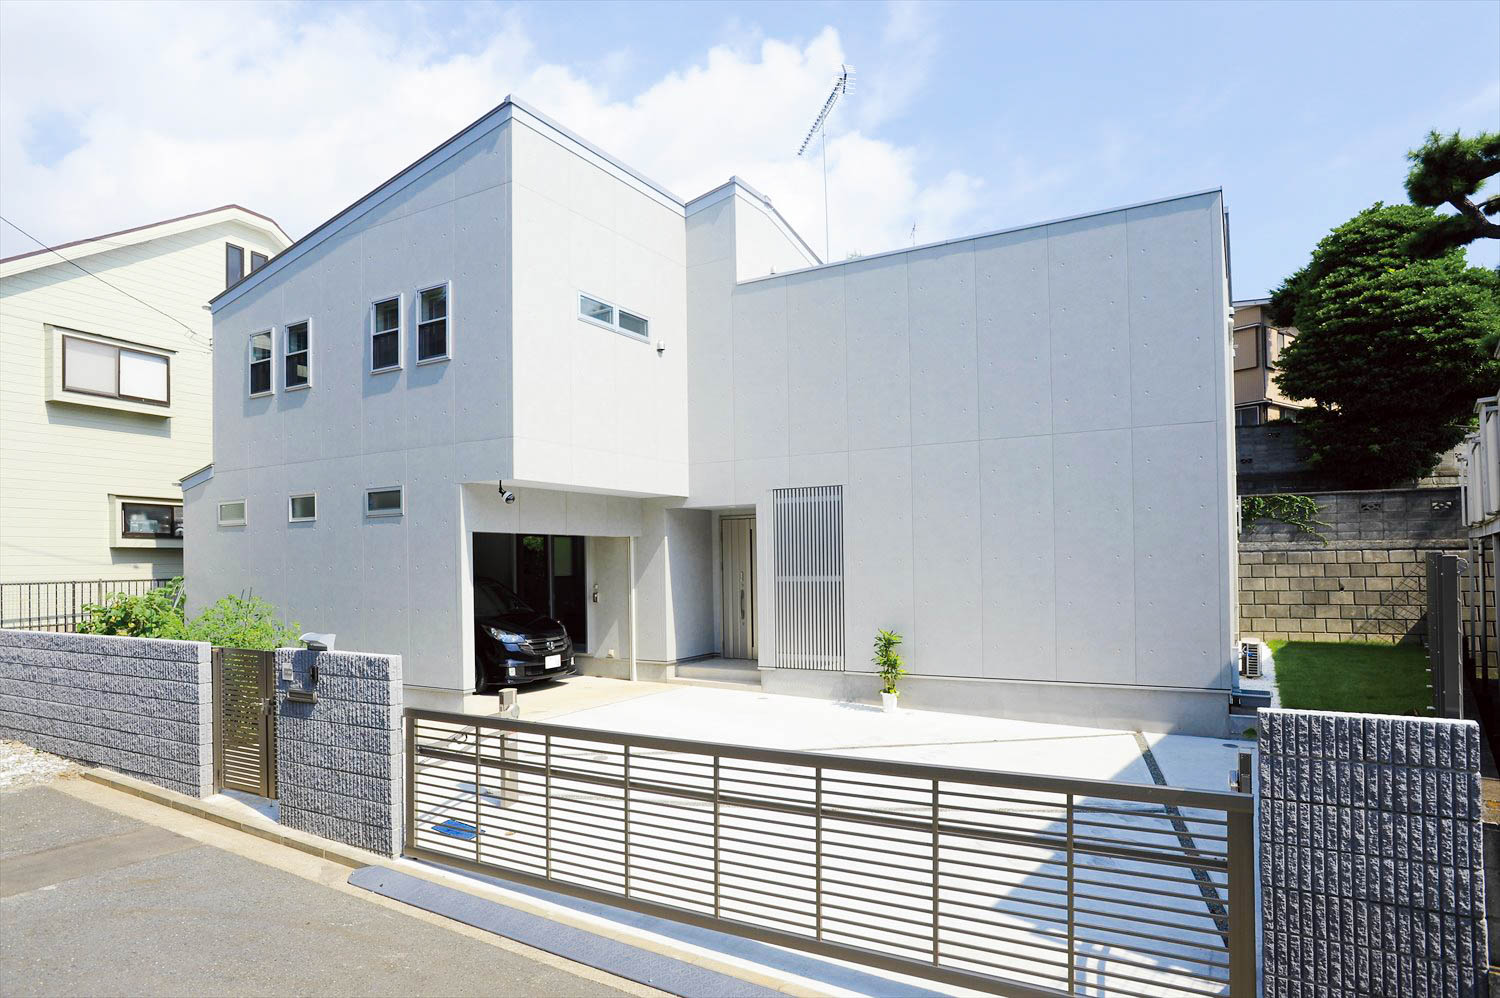 いろいろな楽しみ方ができるガレージハウスとは 神奈川で注文住宅ならホームスタイリング